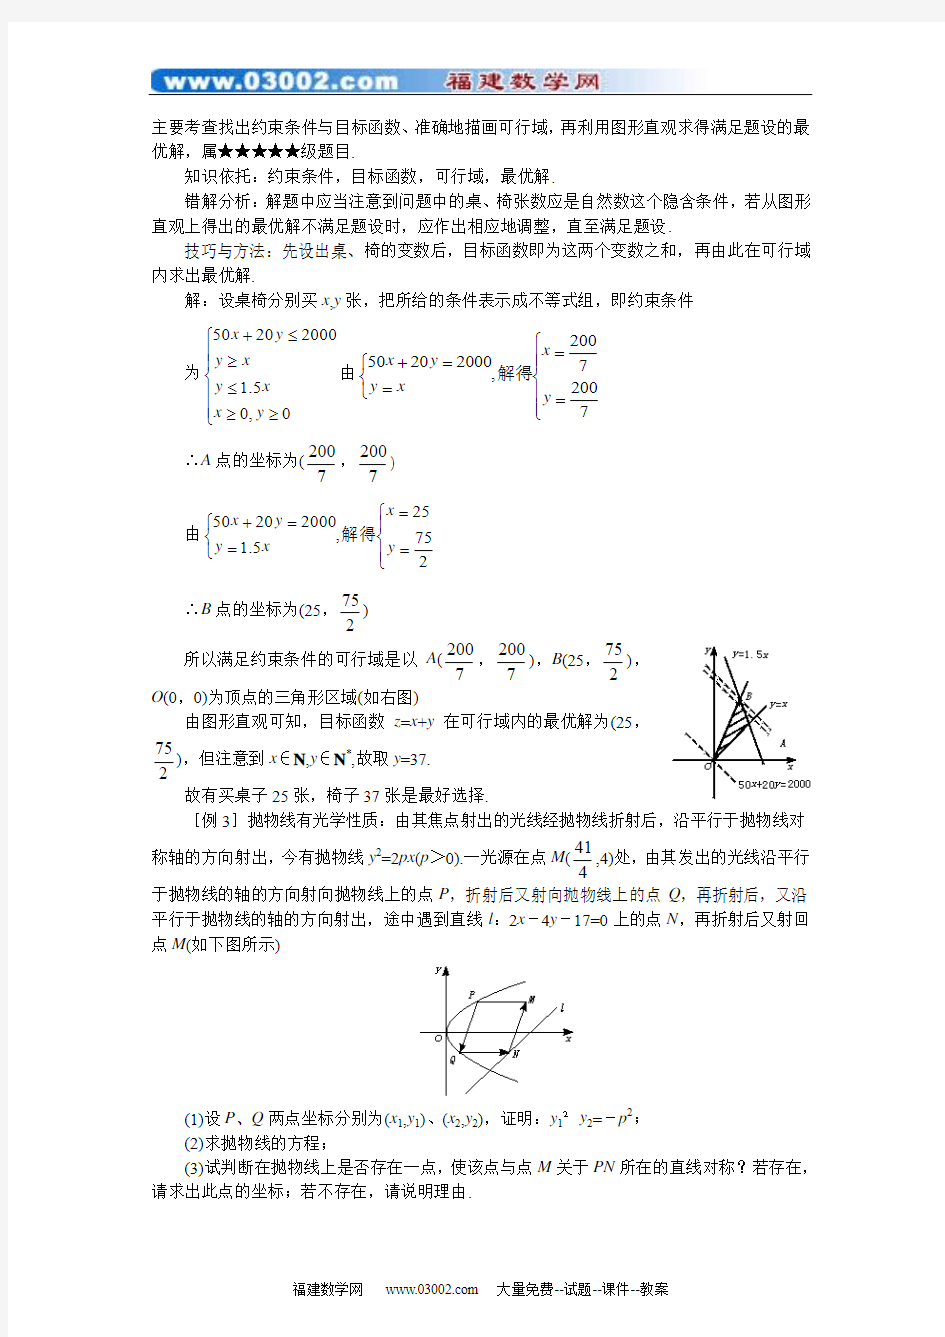 【数学】高考数学难点归纳21 直线方程及其应用